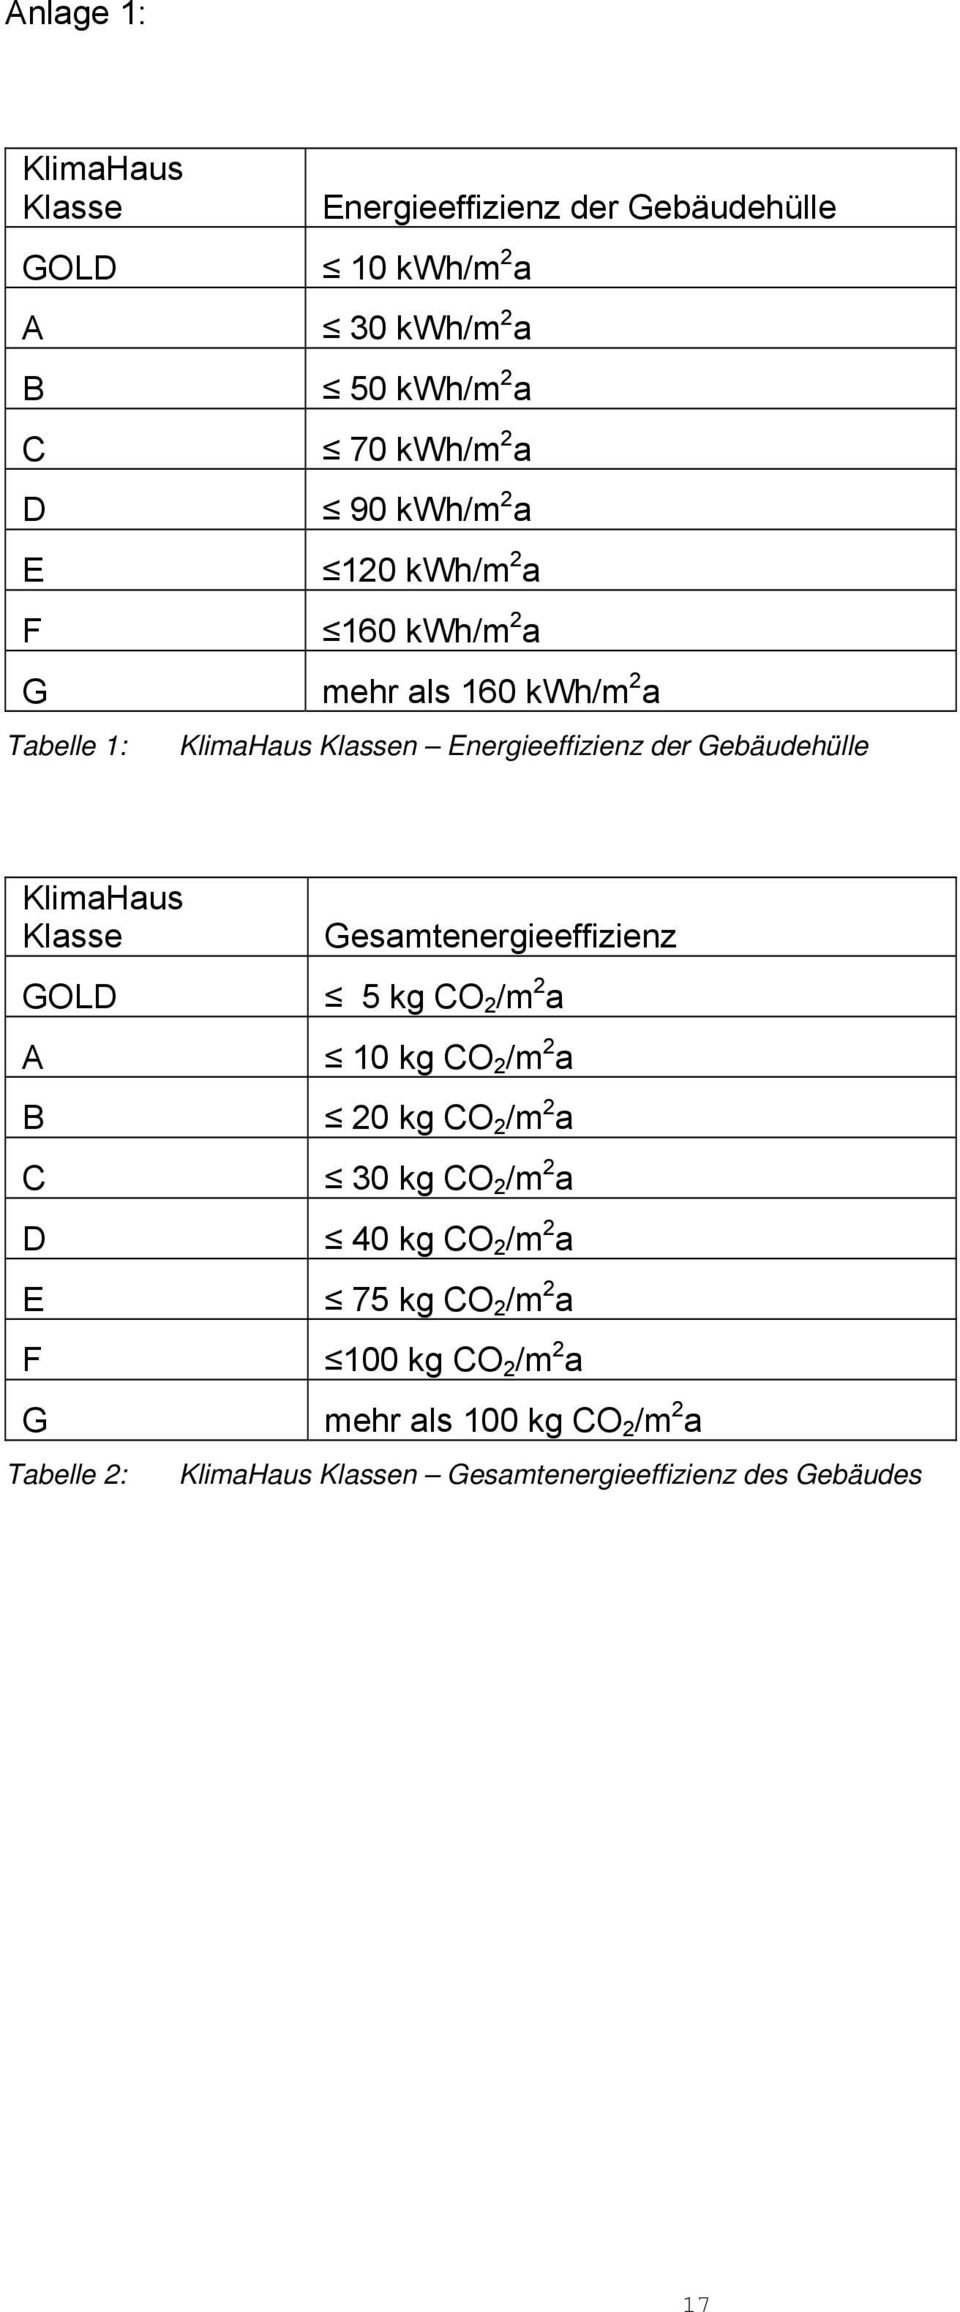 KlimaHaus Klasse GOLD A B C D E F G Tabelle 2: Gesamtenergieeffizienz 5 kg CO 2 /m 2 a 10 kg CO 2 /m 2 a 20 kg CO 2 /m 2 a 30 kg CO 2